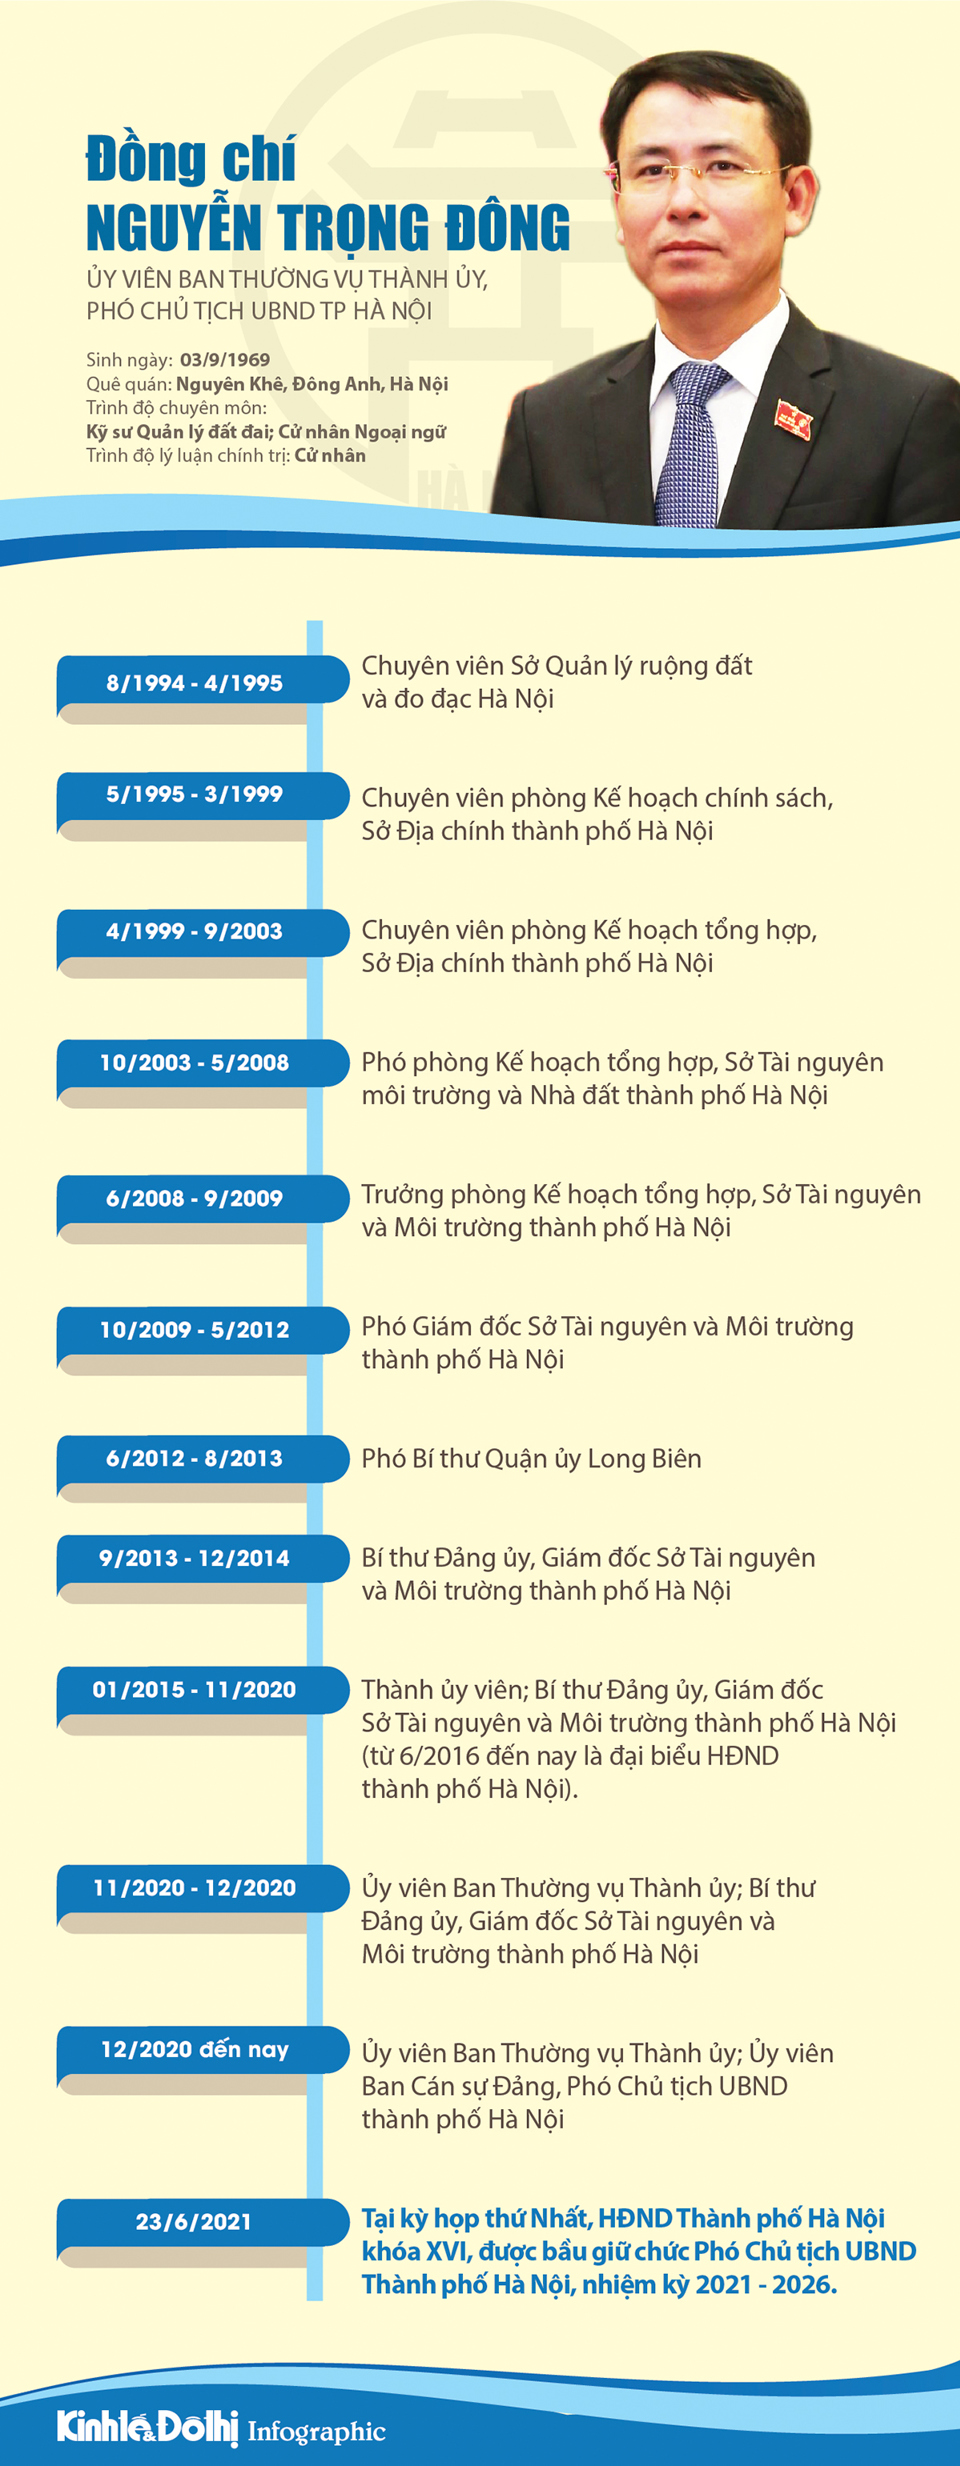 [Infographic] Chân dung Phó Chủ tịch UBND TP Hà Nội Nguyễn Trọng Đông - Ảnh 1